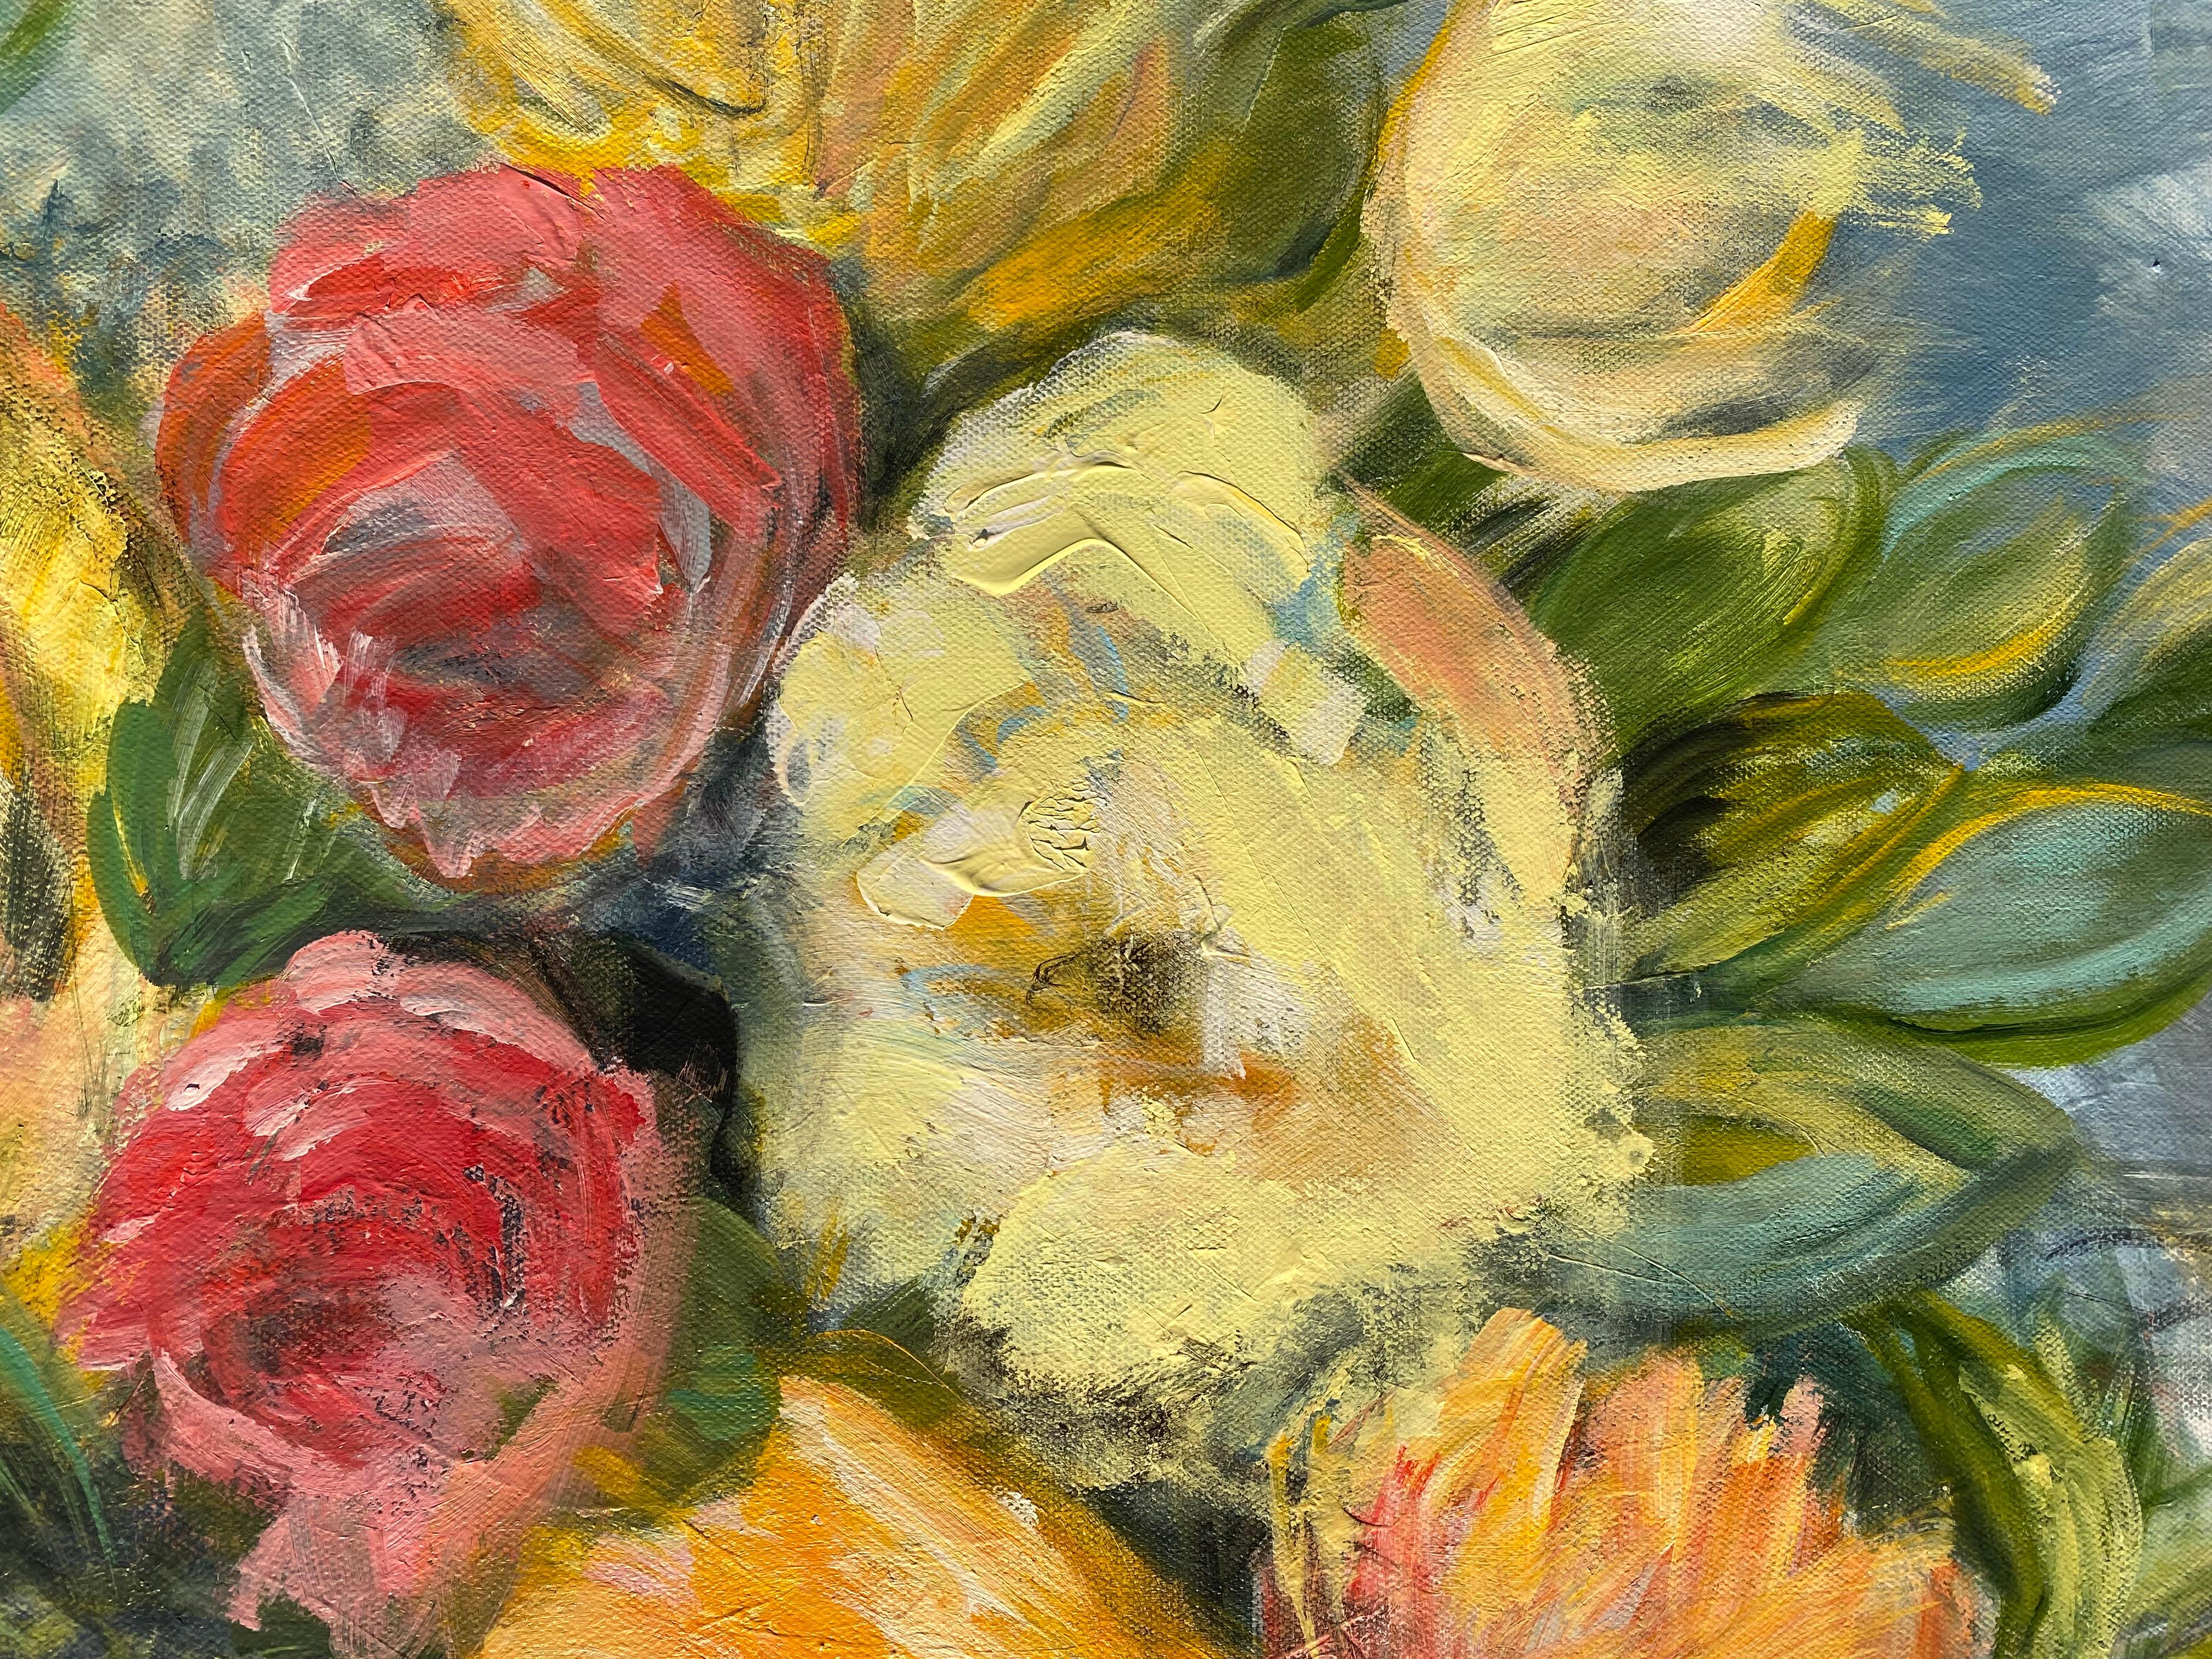 <p>Kommentare des KünstlersEine Fülle von Blumen sprießt aus einer einfachen Glasvase.<br> Die verschiedenen Farben, Formen und Größen vermitteln den Eindruck eines blühenden Gartens. Mehrere dicke Farbschichten stellen das dynamische Aussehen der